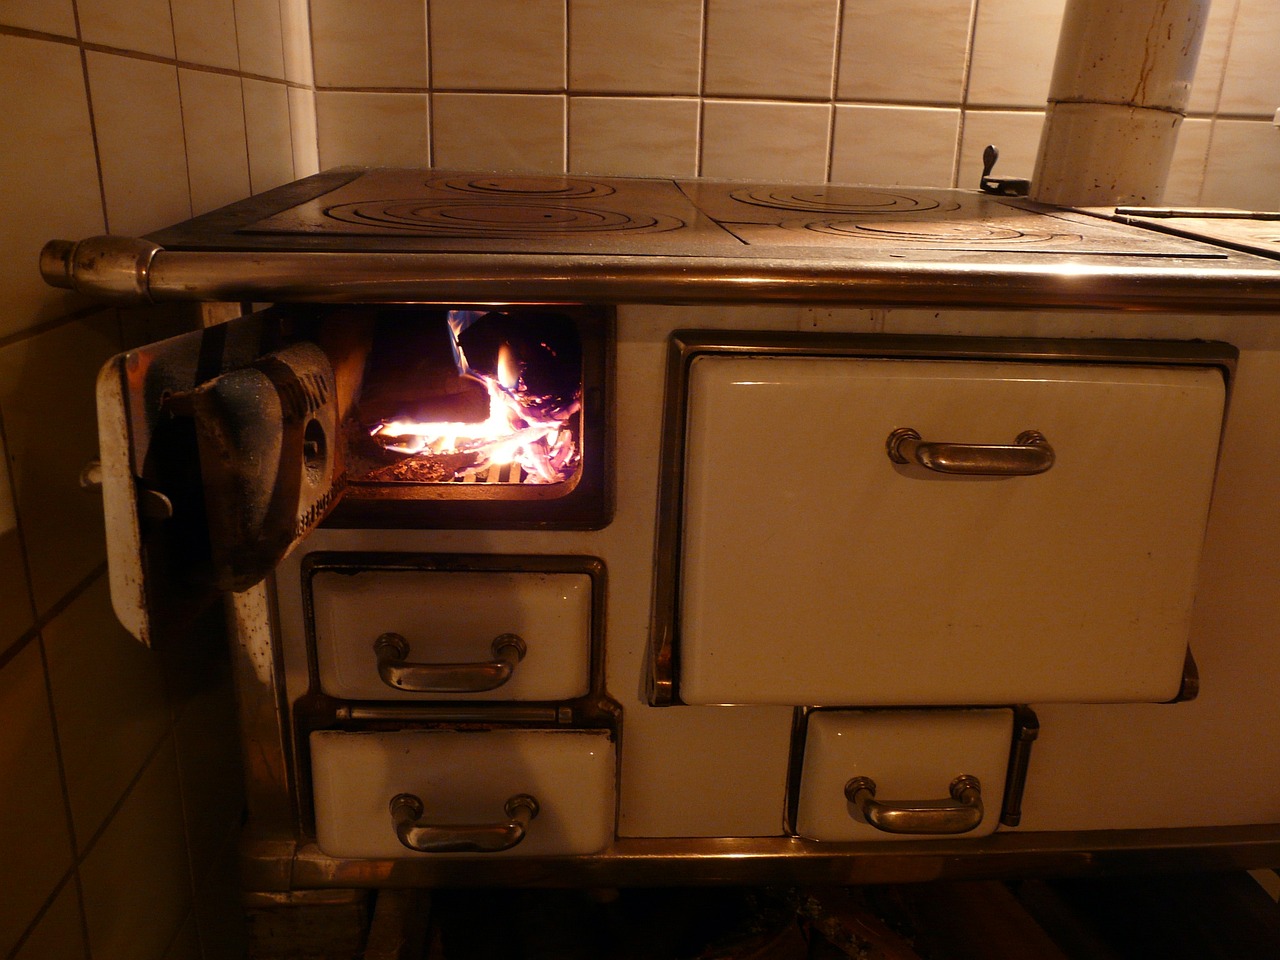 oven, stove, kitchen stove